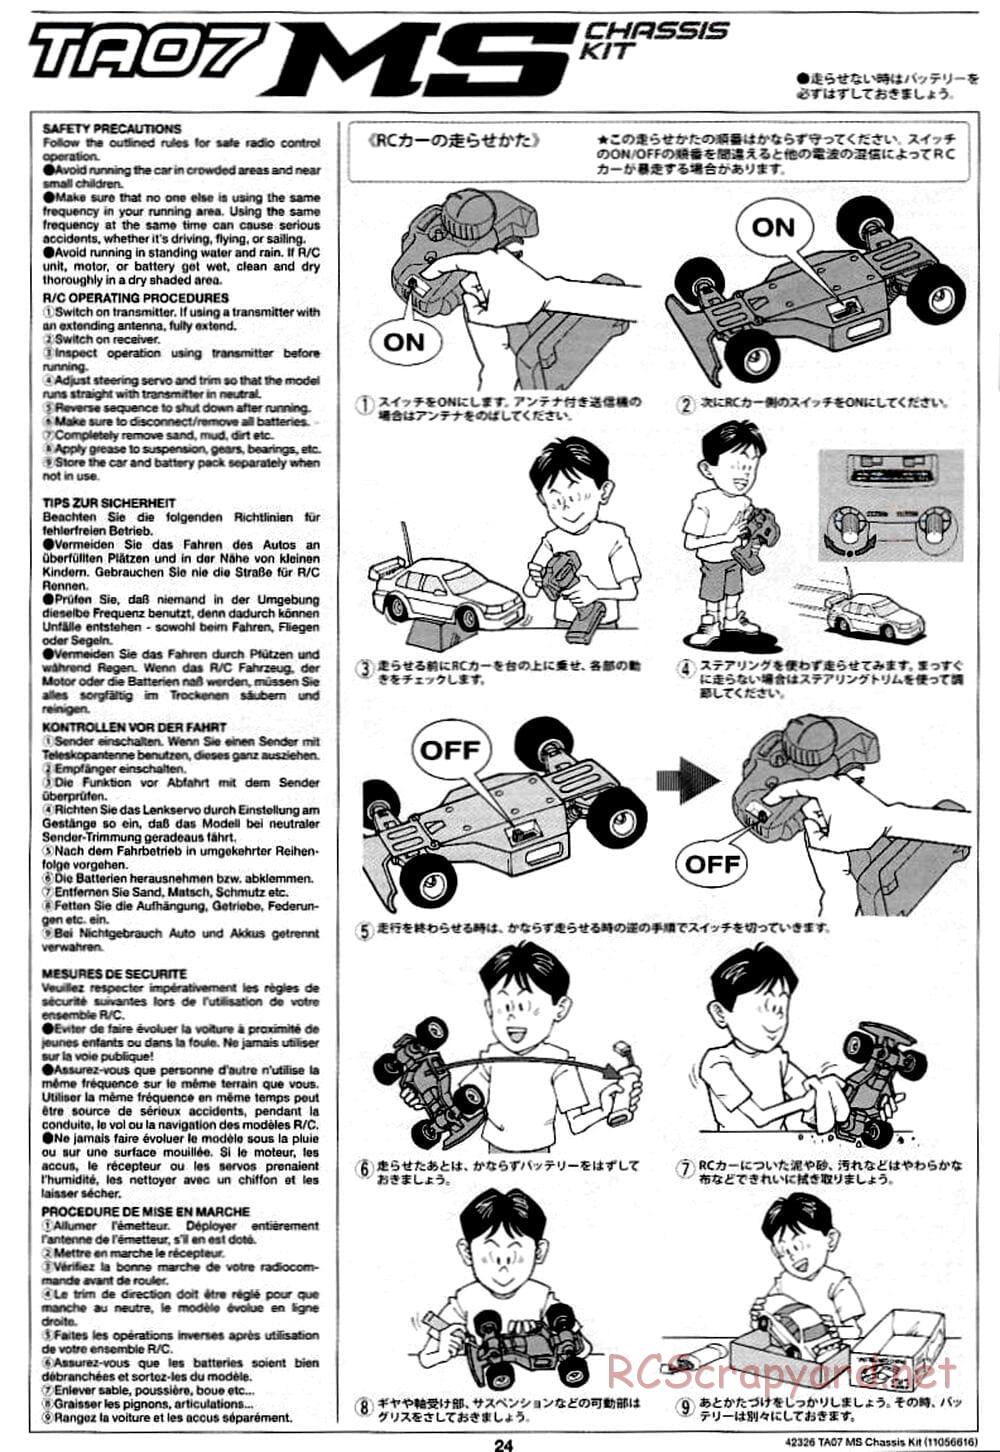 Tamiya - TA07 MS Chassis - Manual - Page 24